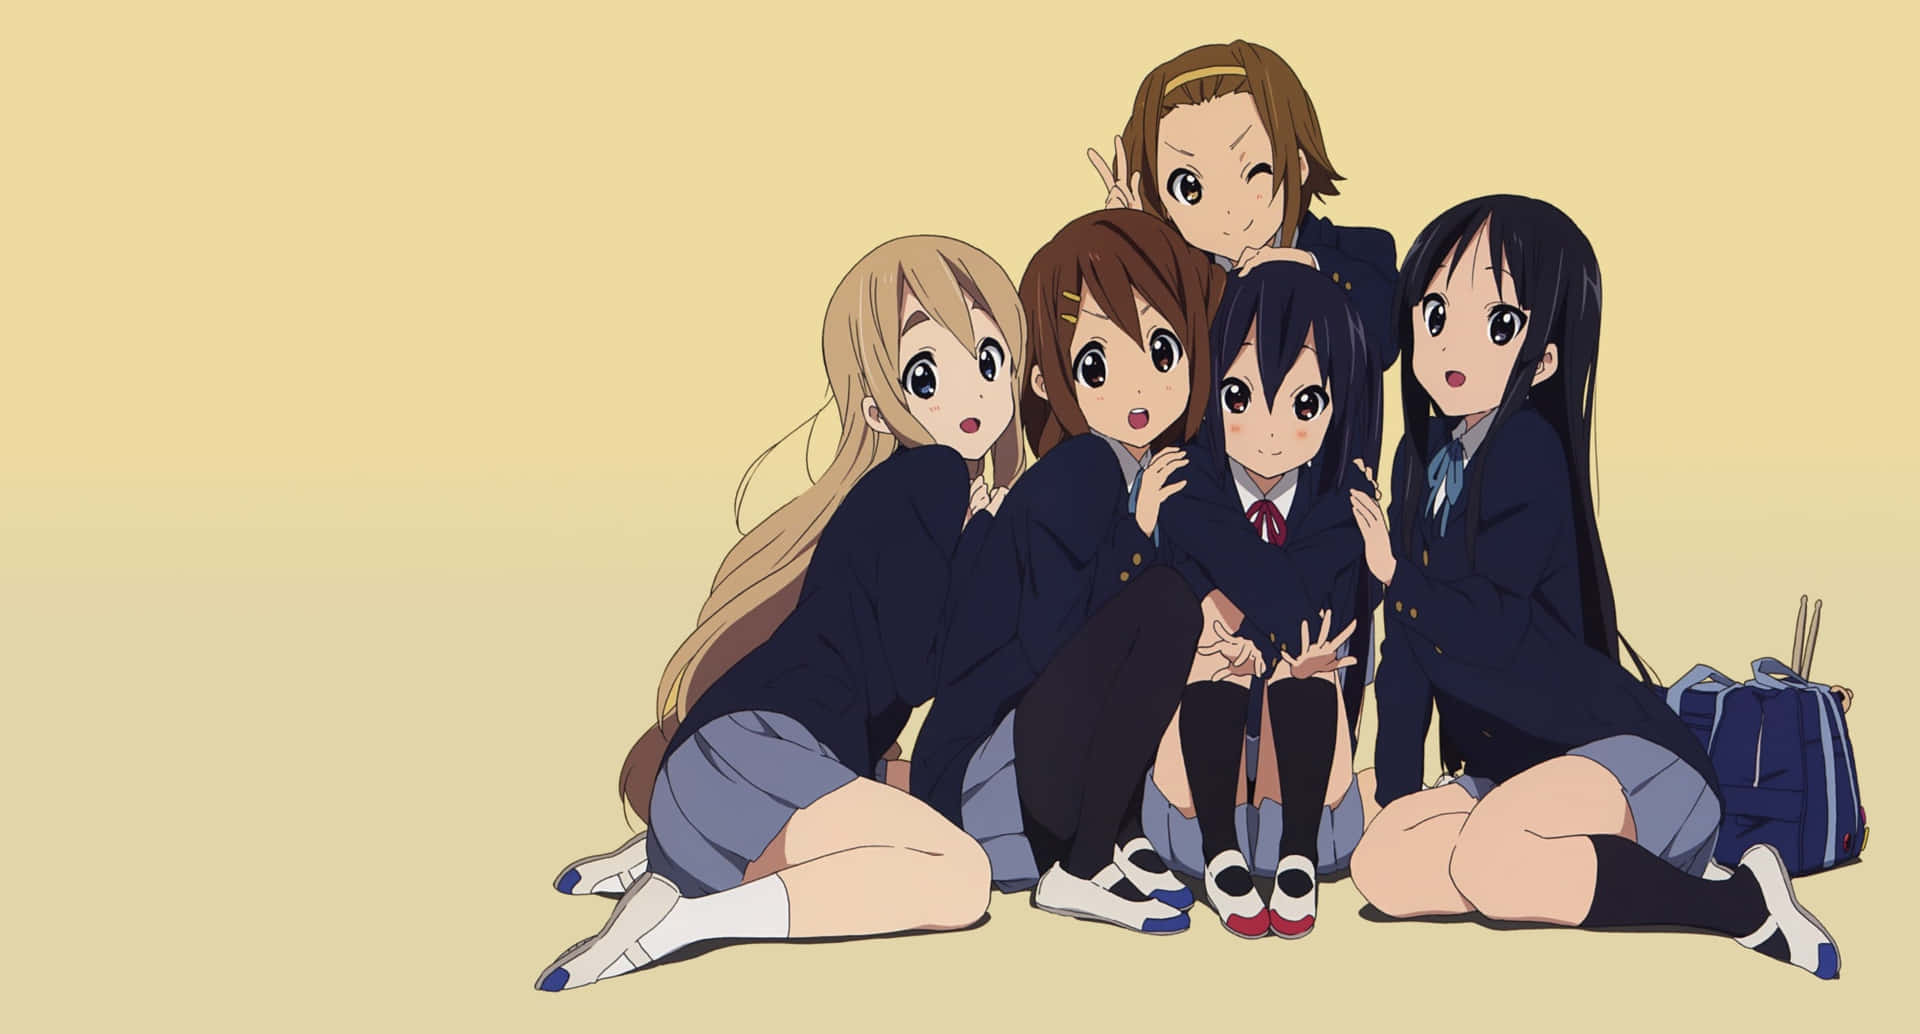 Best 4 Best Friend Anime on Hip girls animes school HD wallpaper  Pxfuel